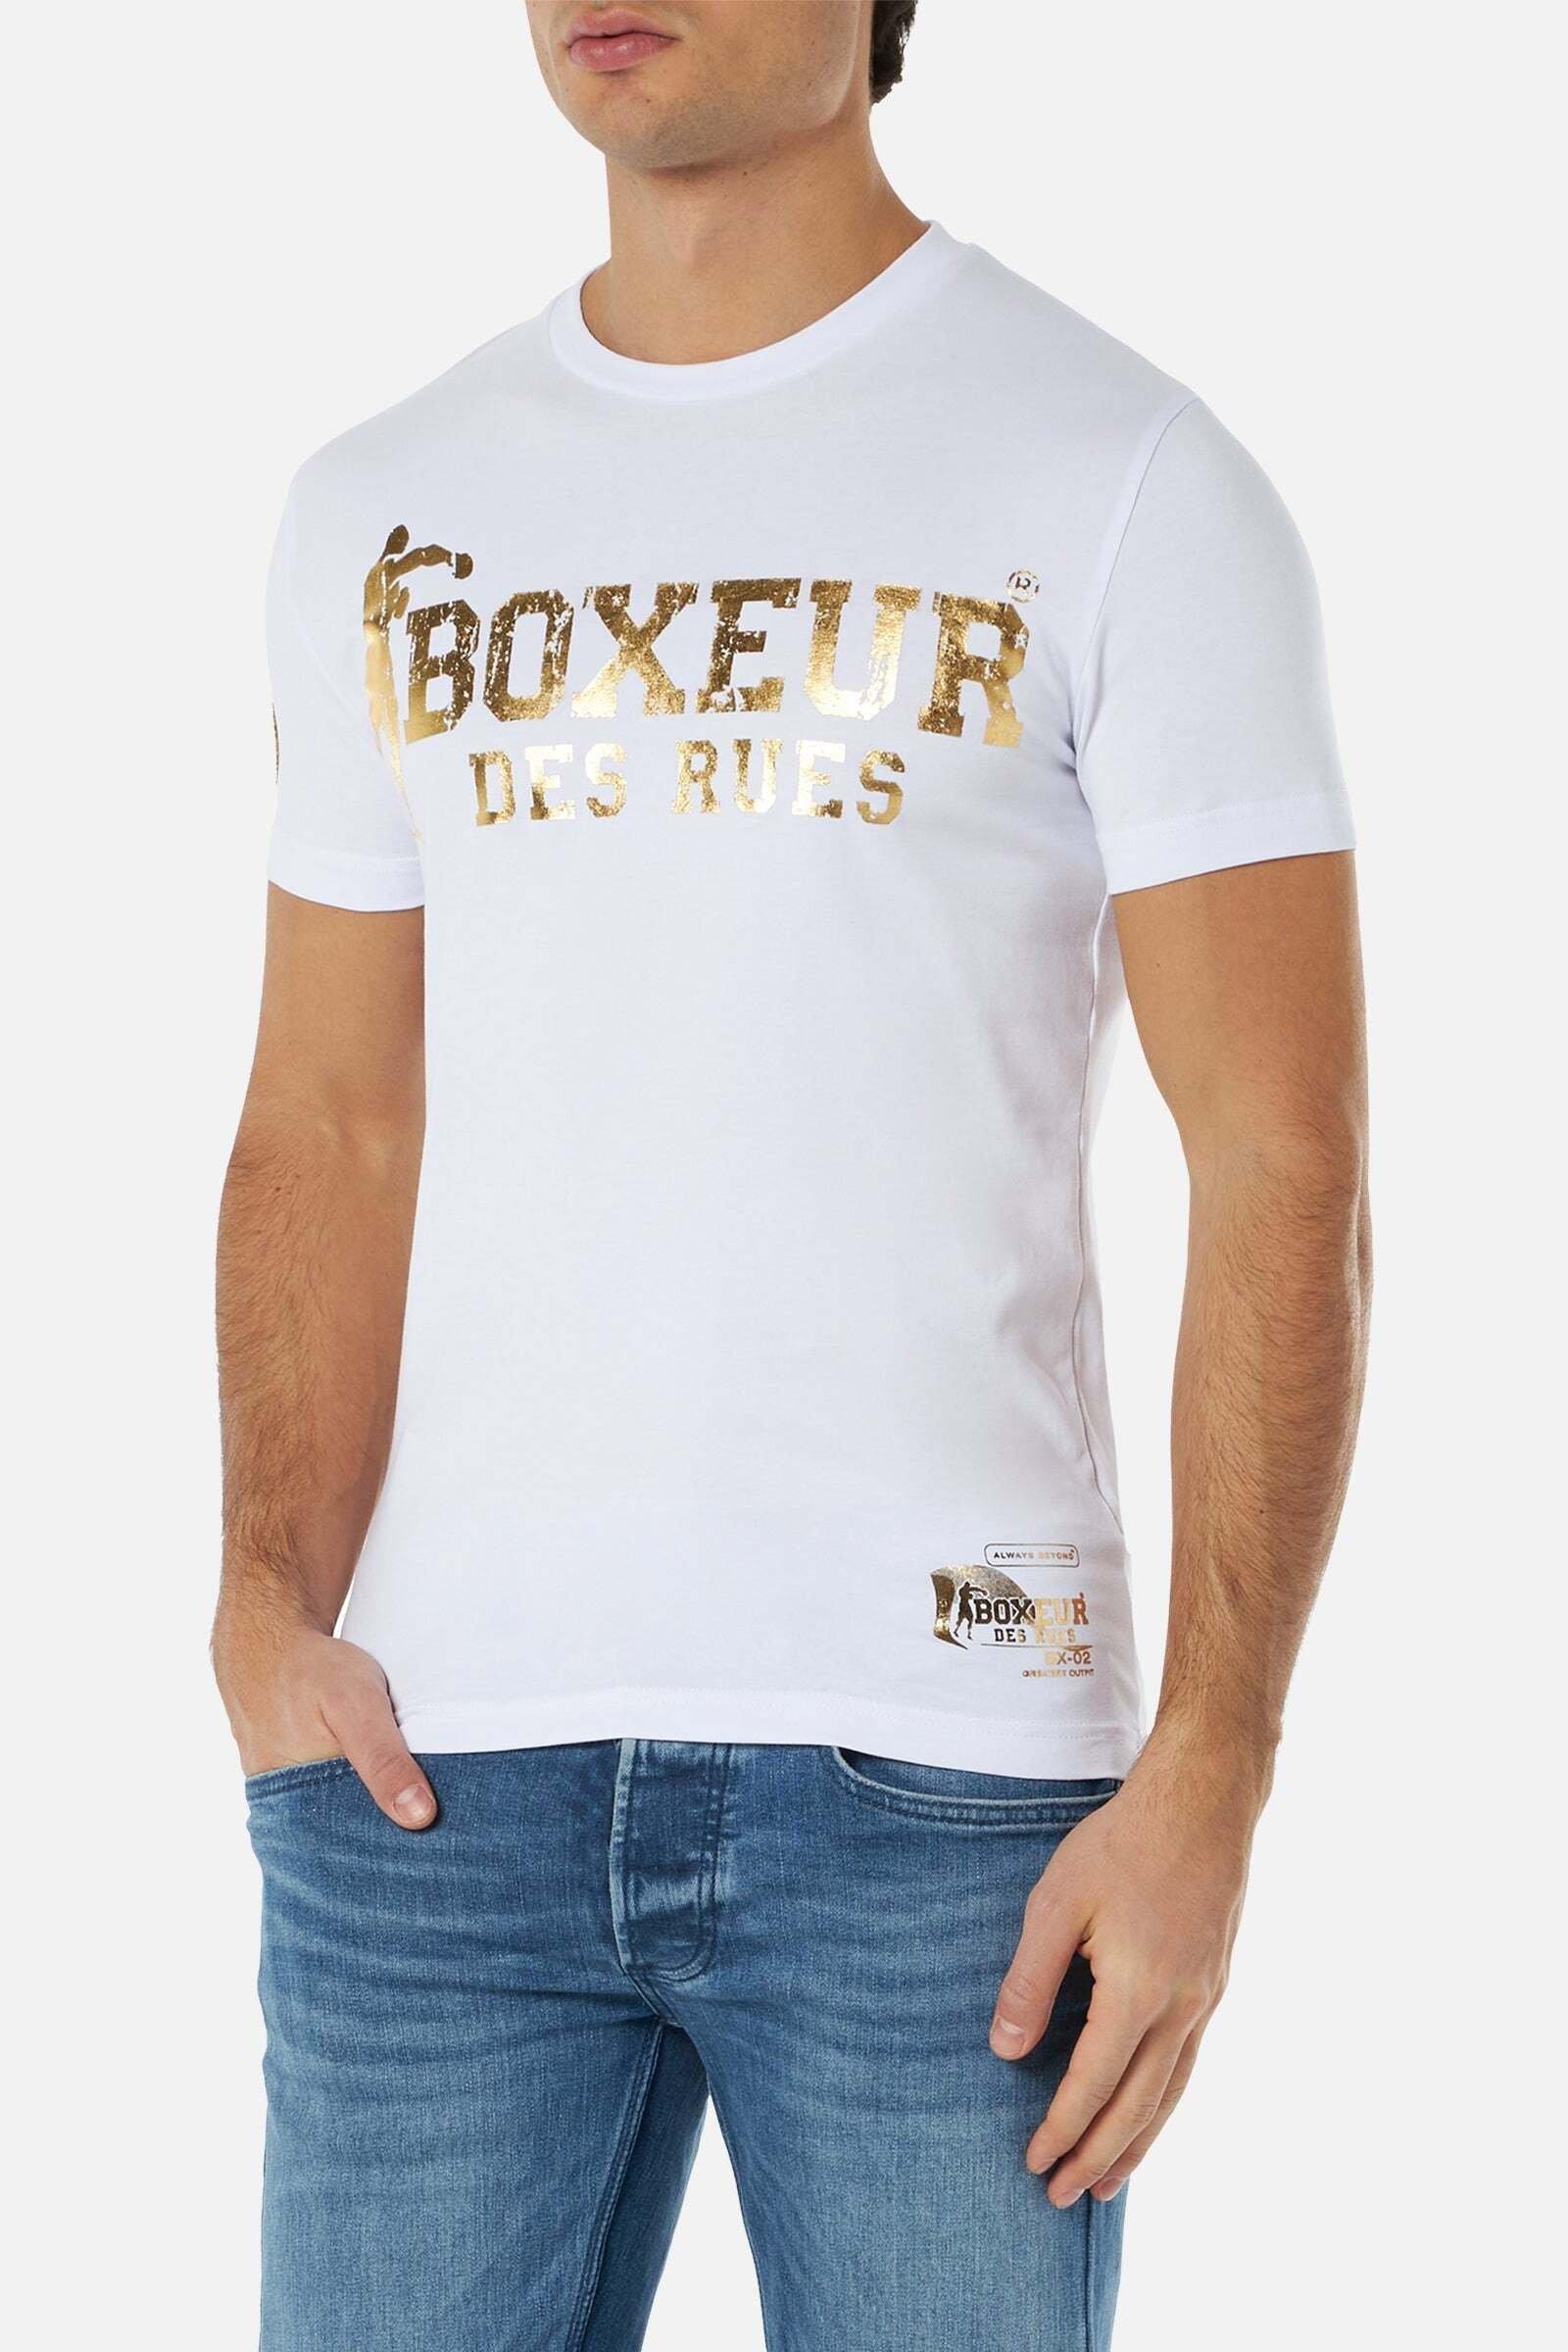 MANOR - BOXEUR DES 2 Boxeur kaufen Street T-Shirt online RUES T-Shirts |